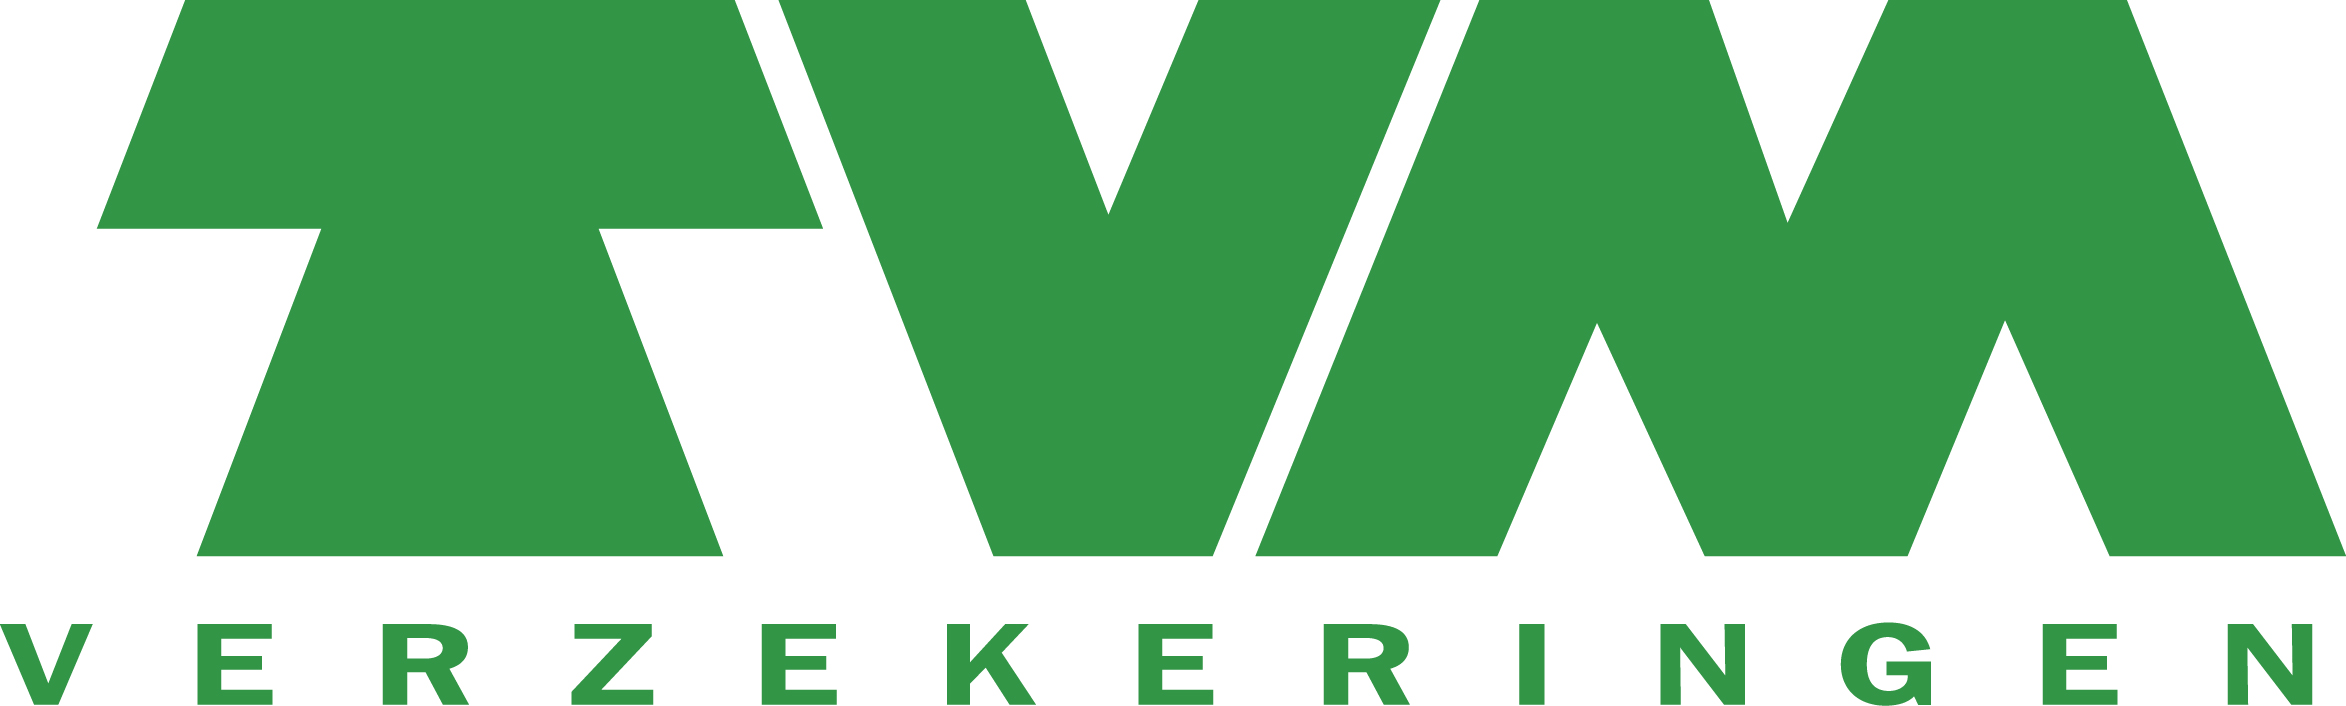 TVM verzekeringen Logo photo - 1